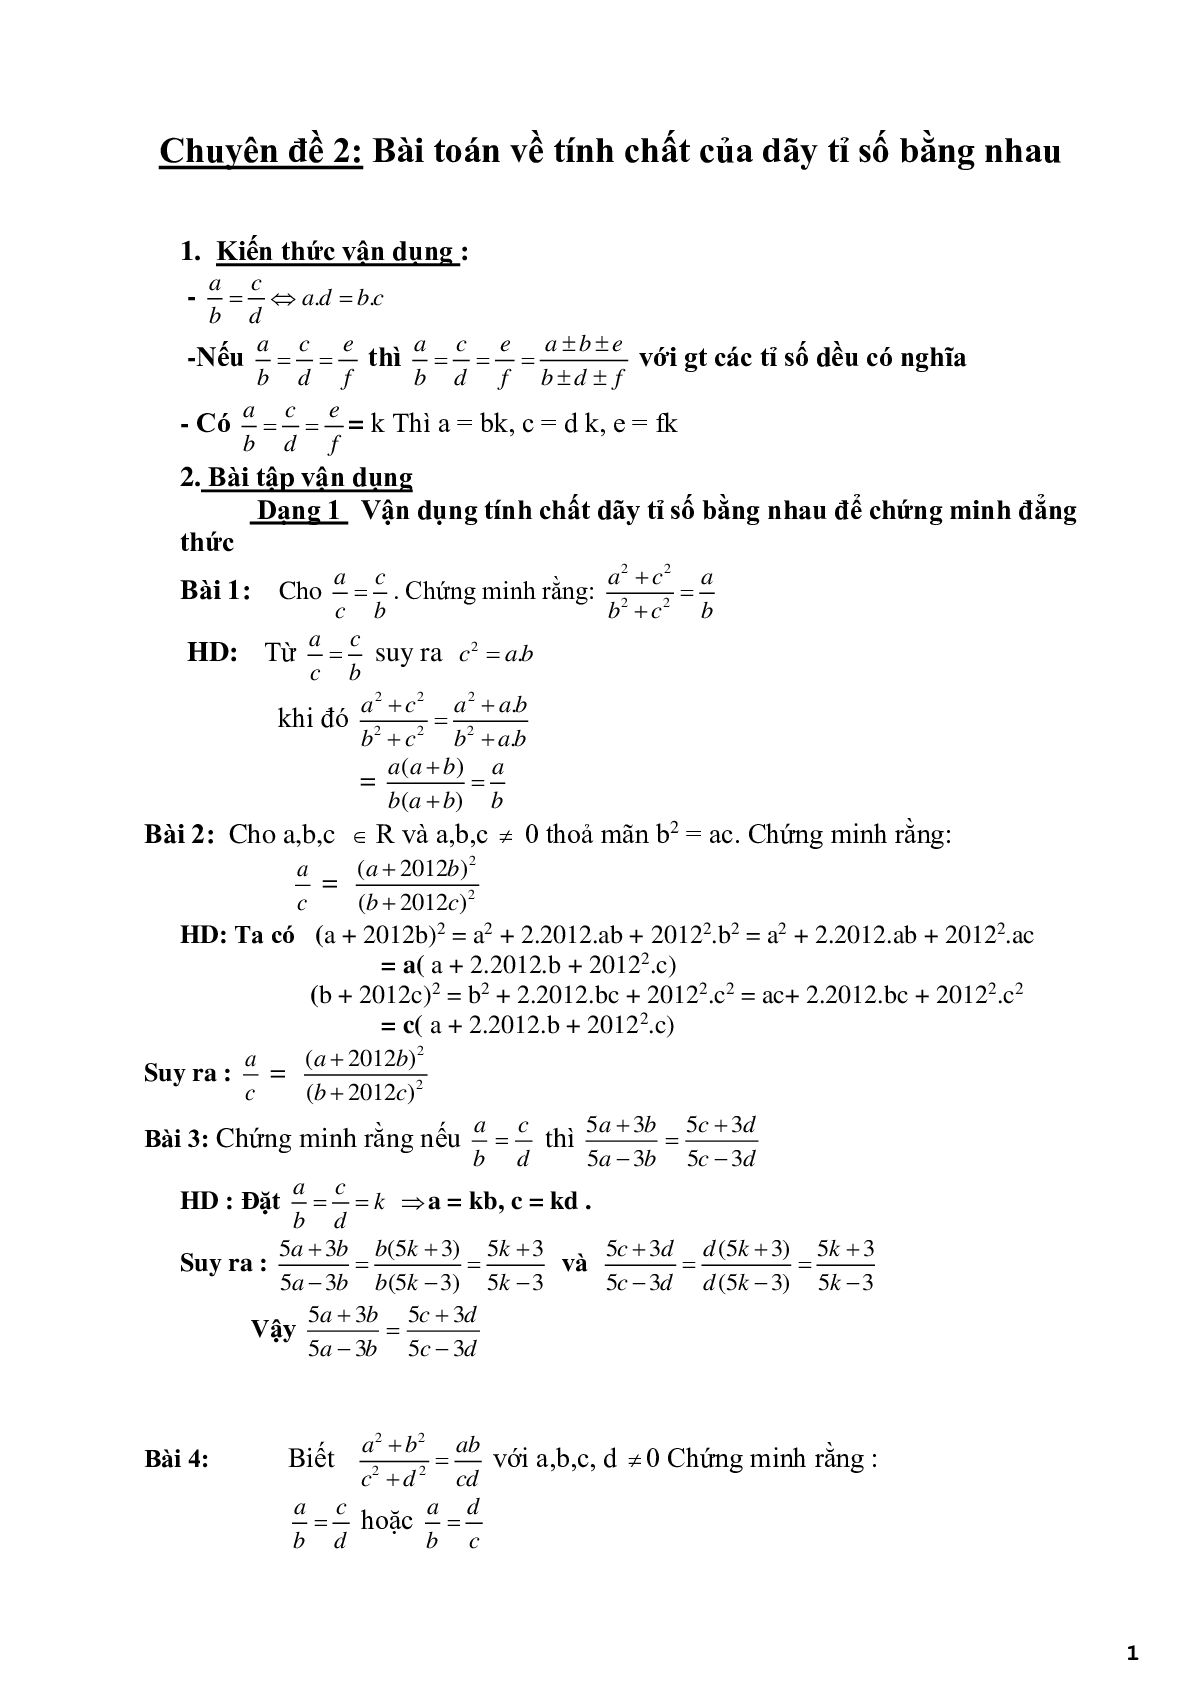 Chuyên đề 2 - Bài toán về tính chất của dãy tỉ số bằng nhau - có đáp án (trang 1)